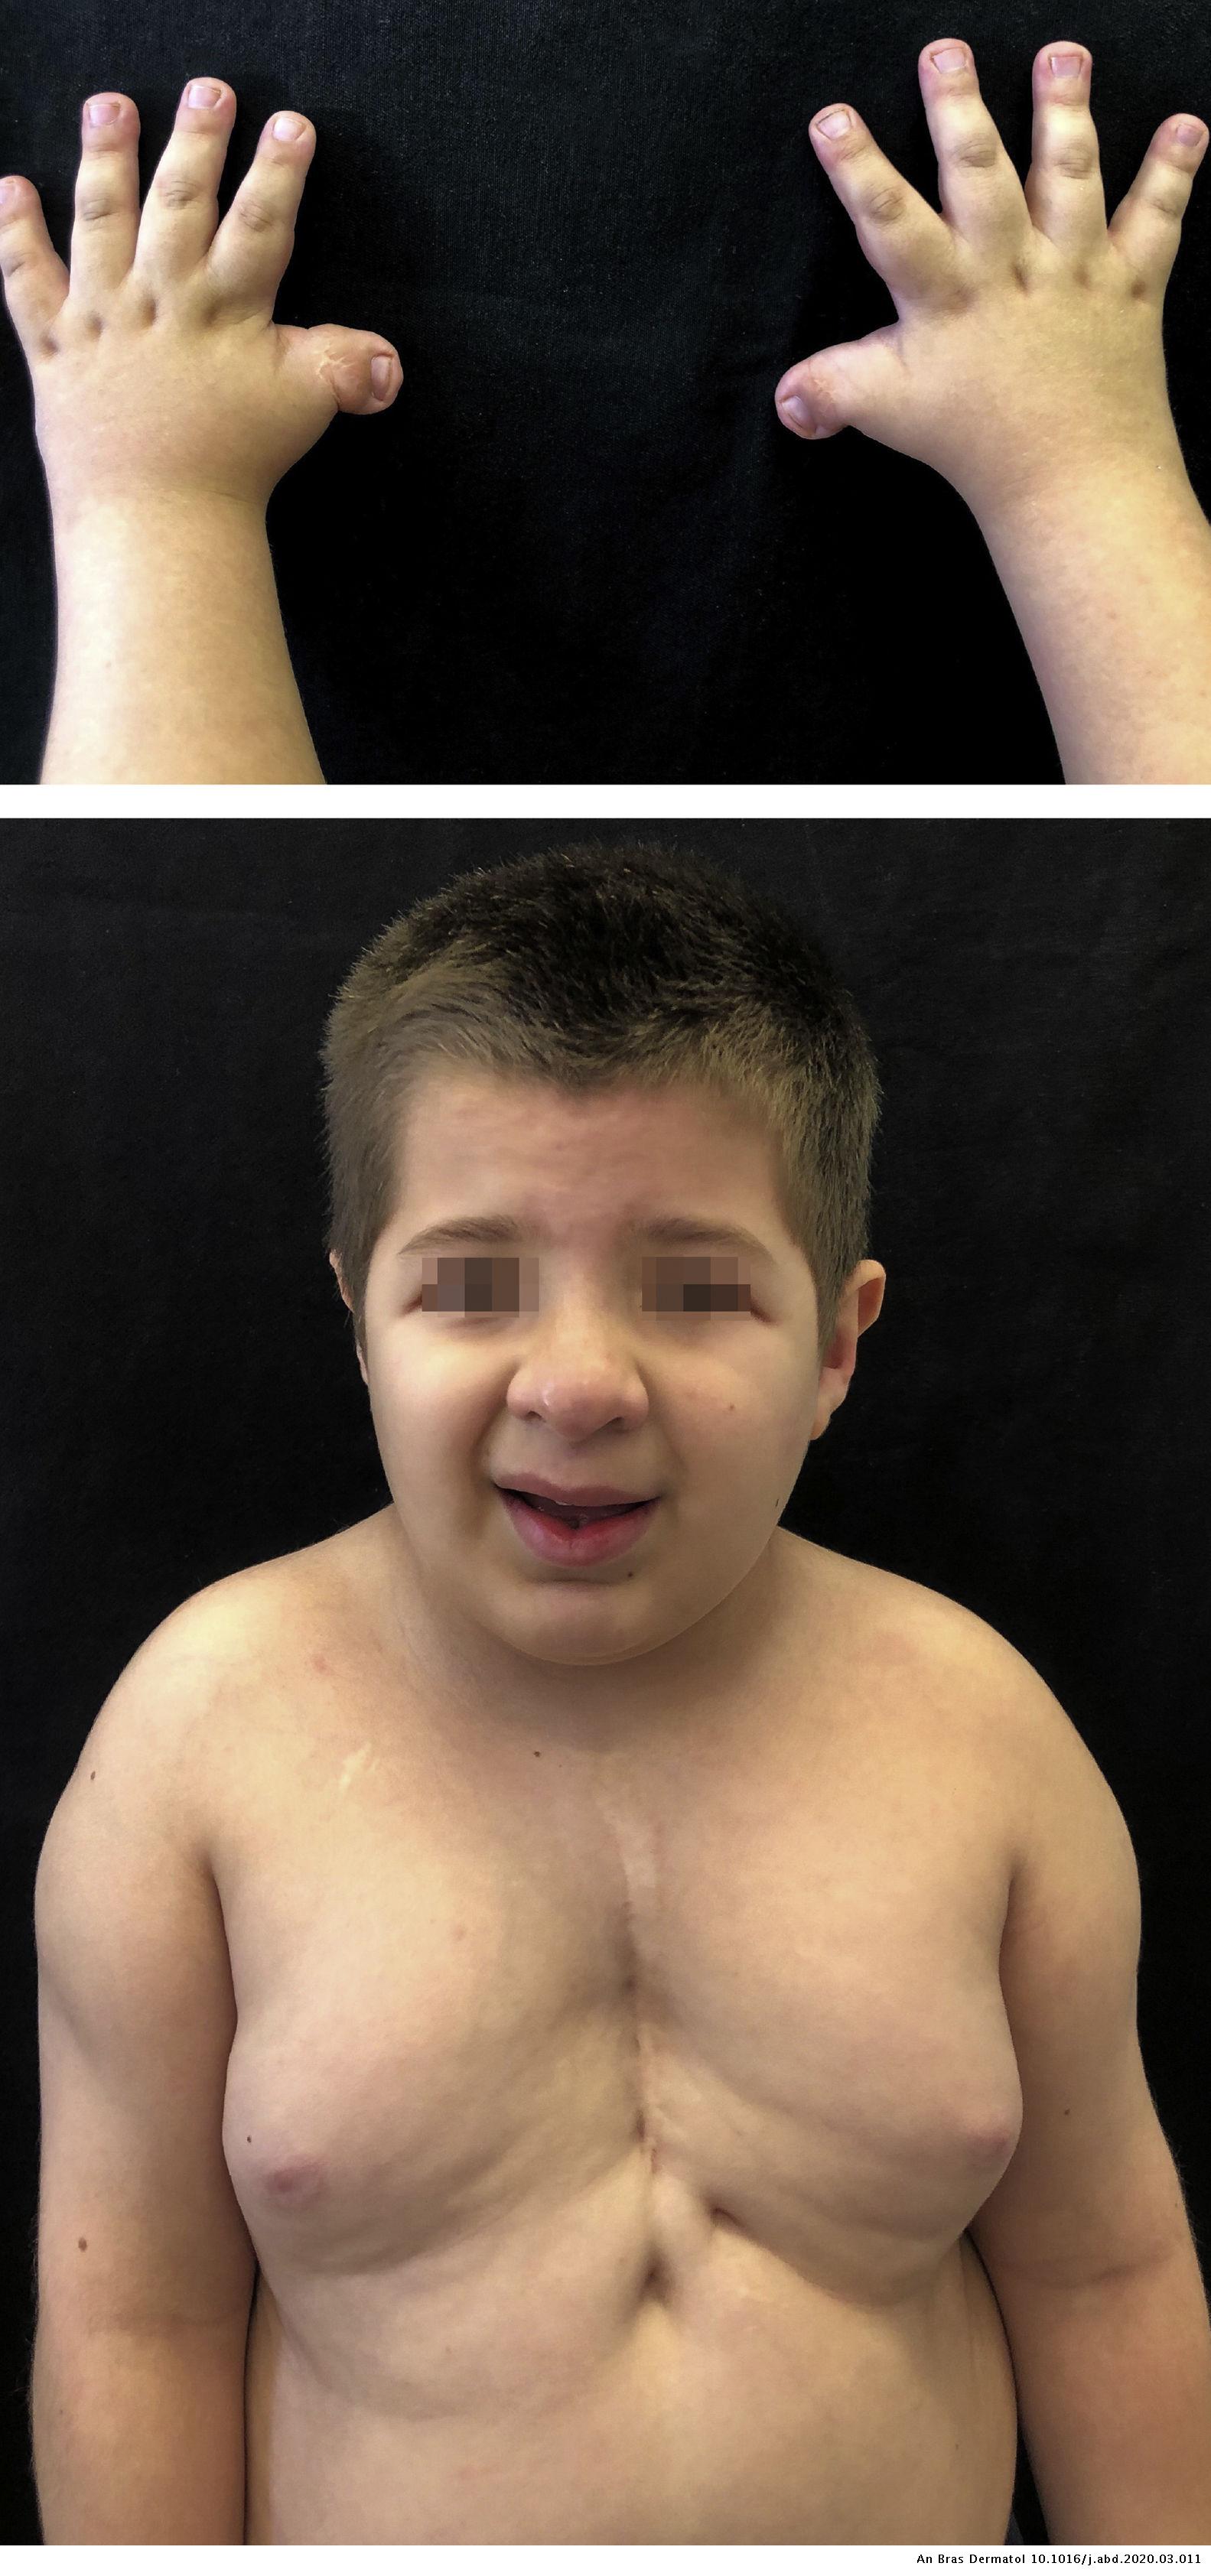 Multiple pilomatricomas in twins with Rubinstein-Taybi syndrome